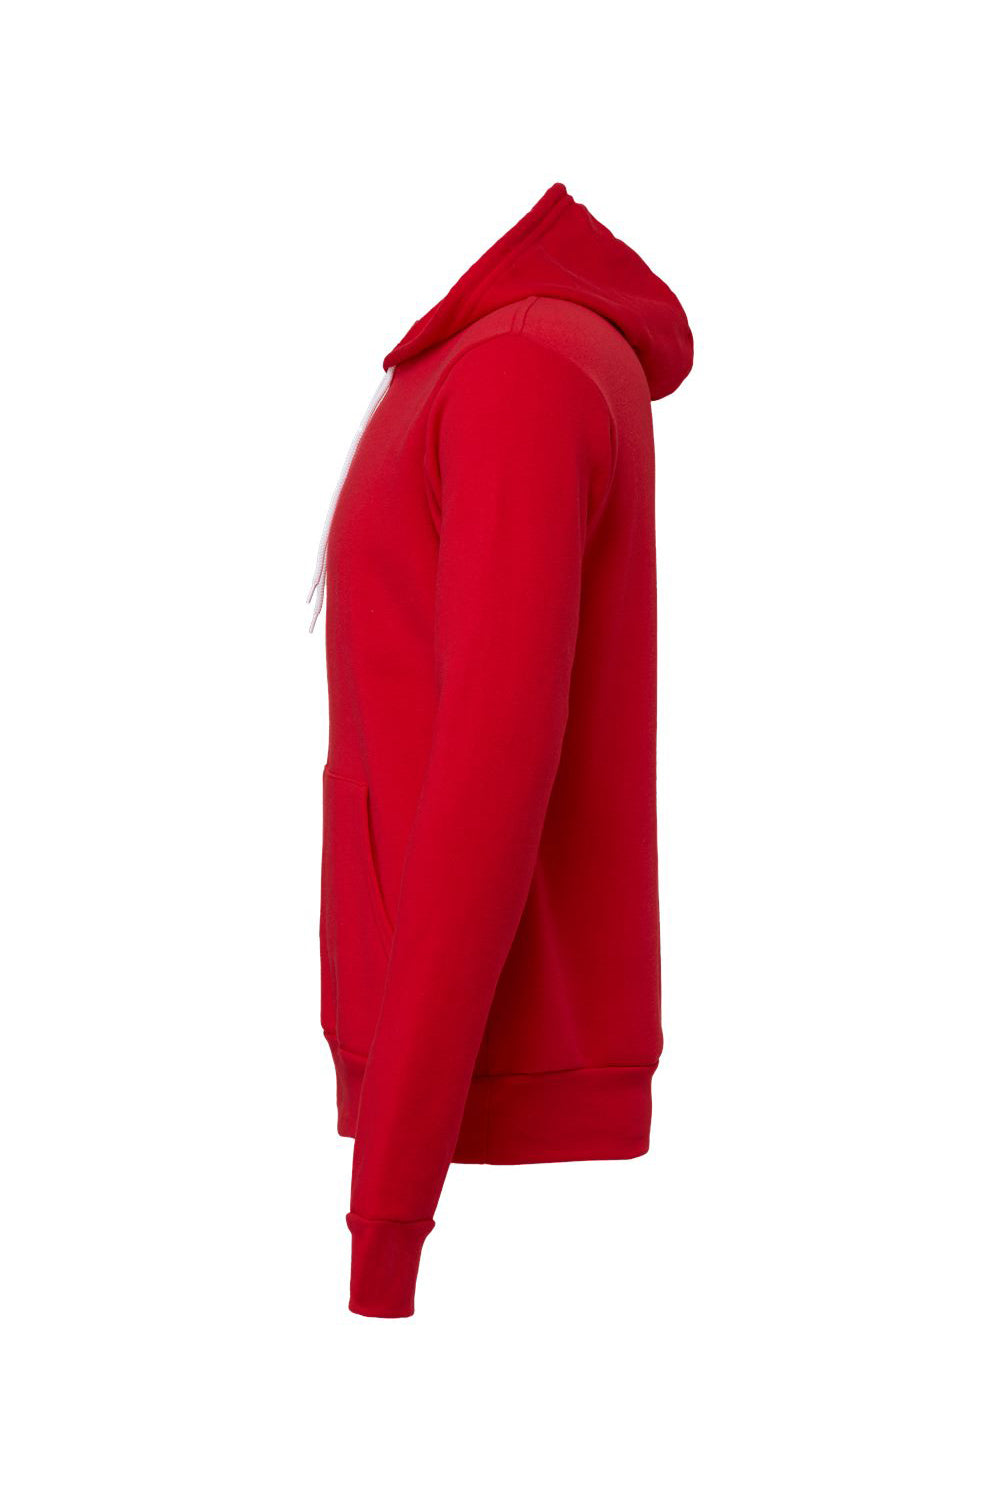 Bella + Canvas BC3719/3719 Mens Sponge Fleece Hooded Sweatshirt Hoodie Red Flat Back